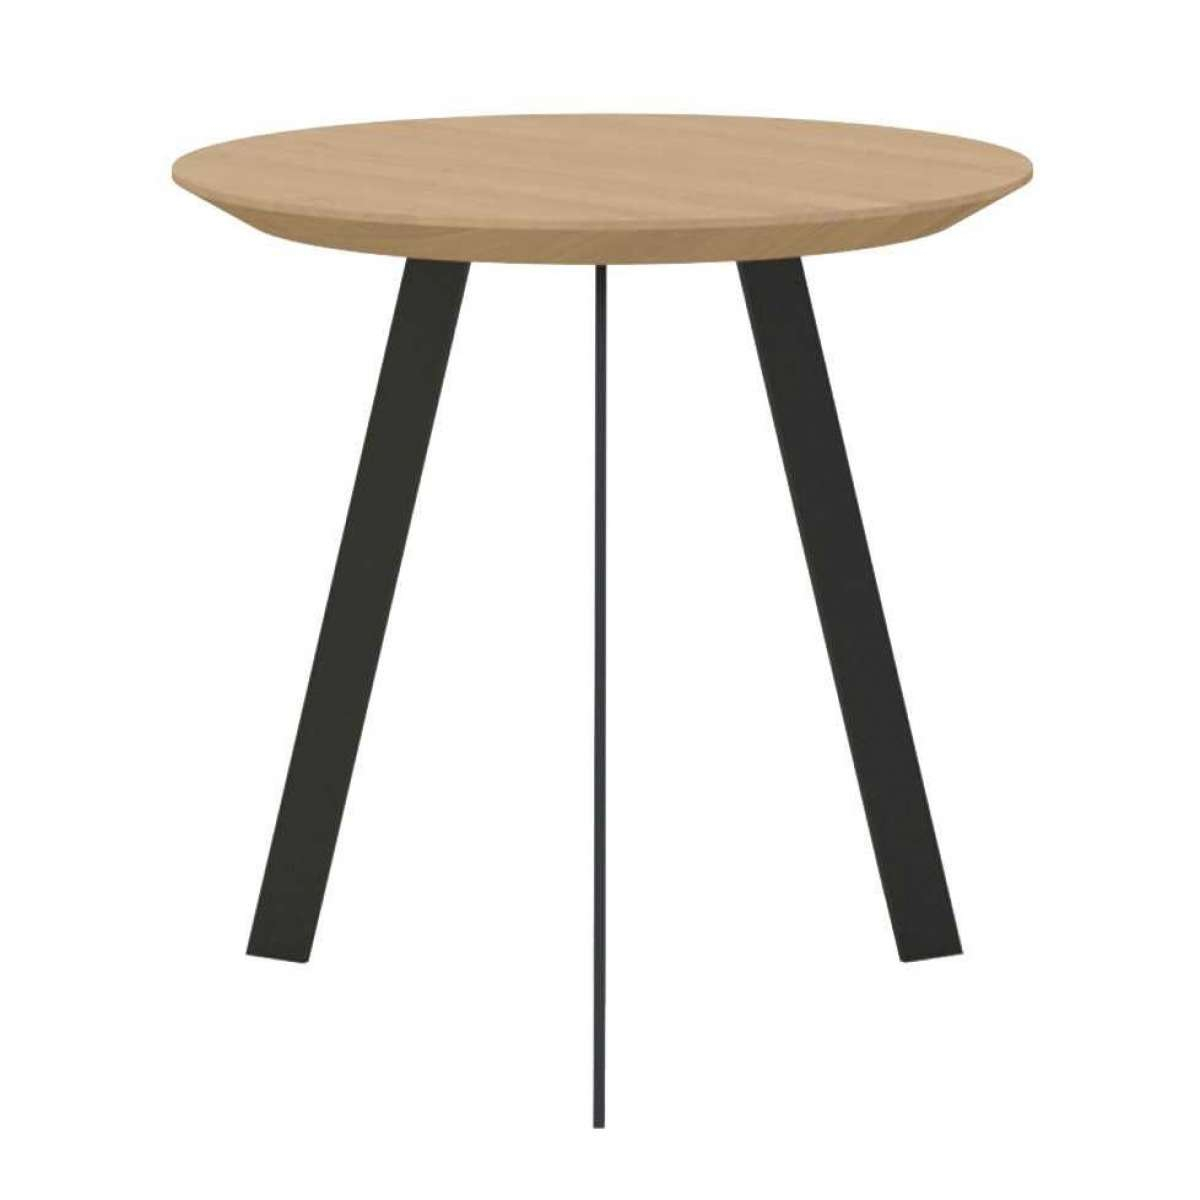 https://www.fundesign.nl/media/catalog/product/n/e/new-co-coffee-table-500-zwart-onderstel-naturel-light-3041-studio-henk-ec1717e75c521871f965ffe201b5e580.jpg